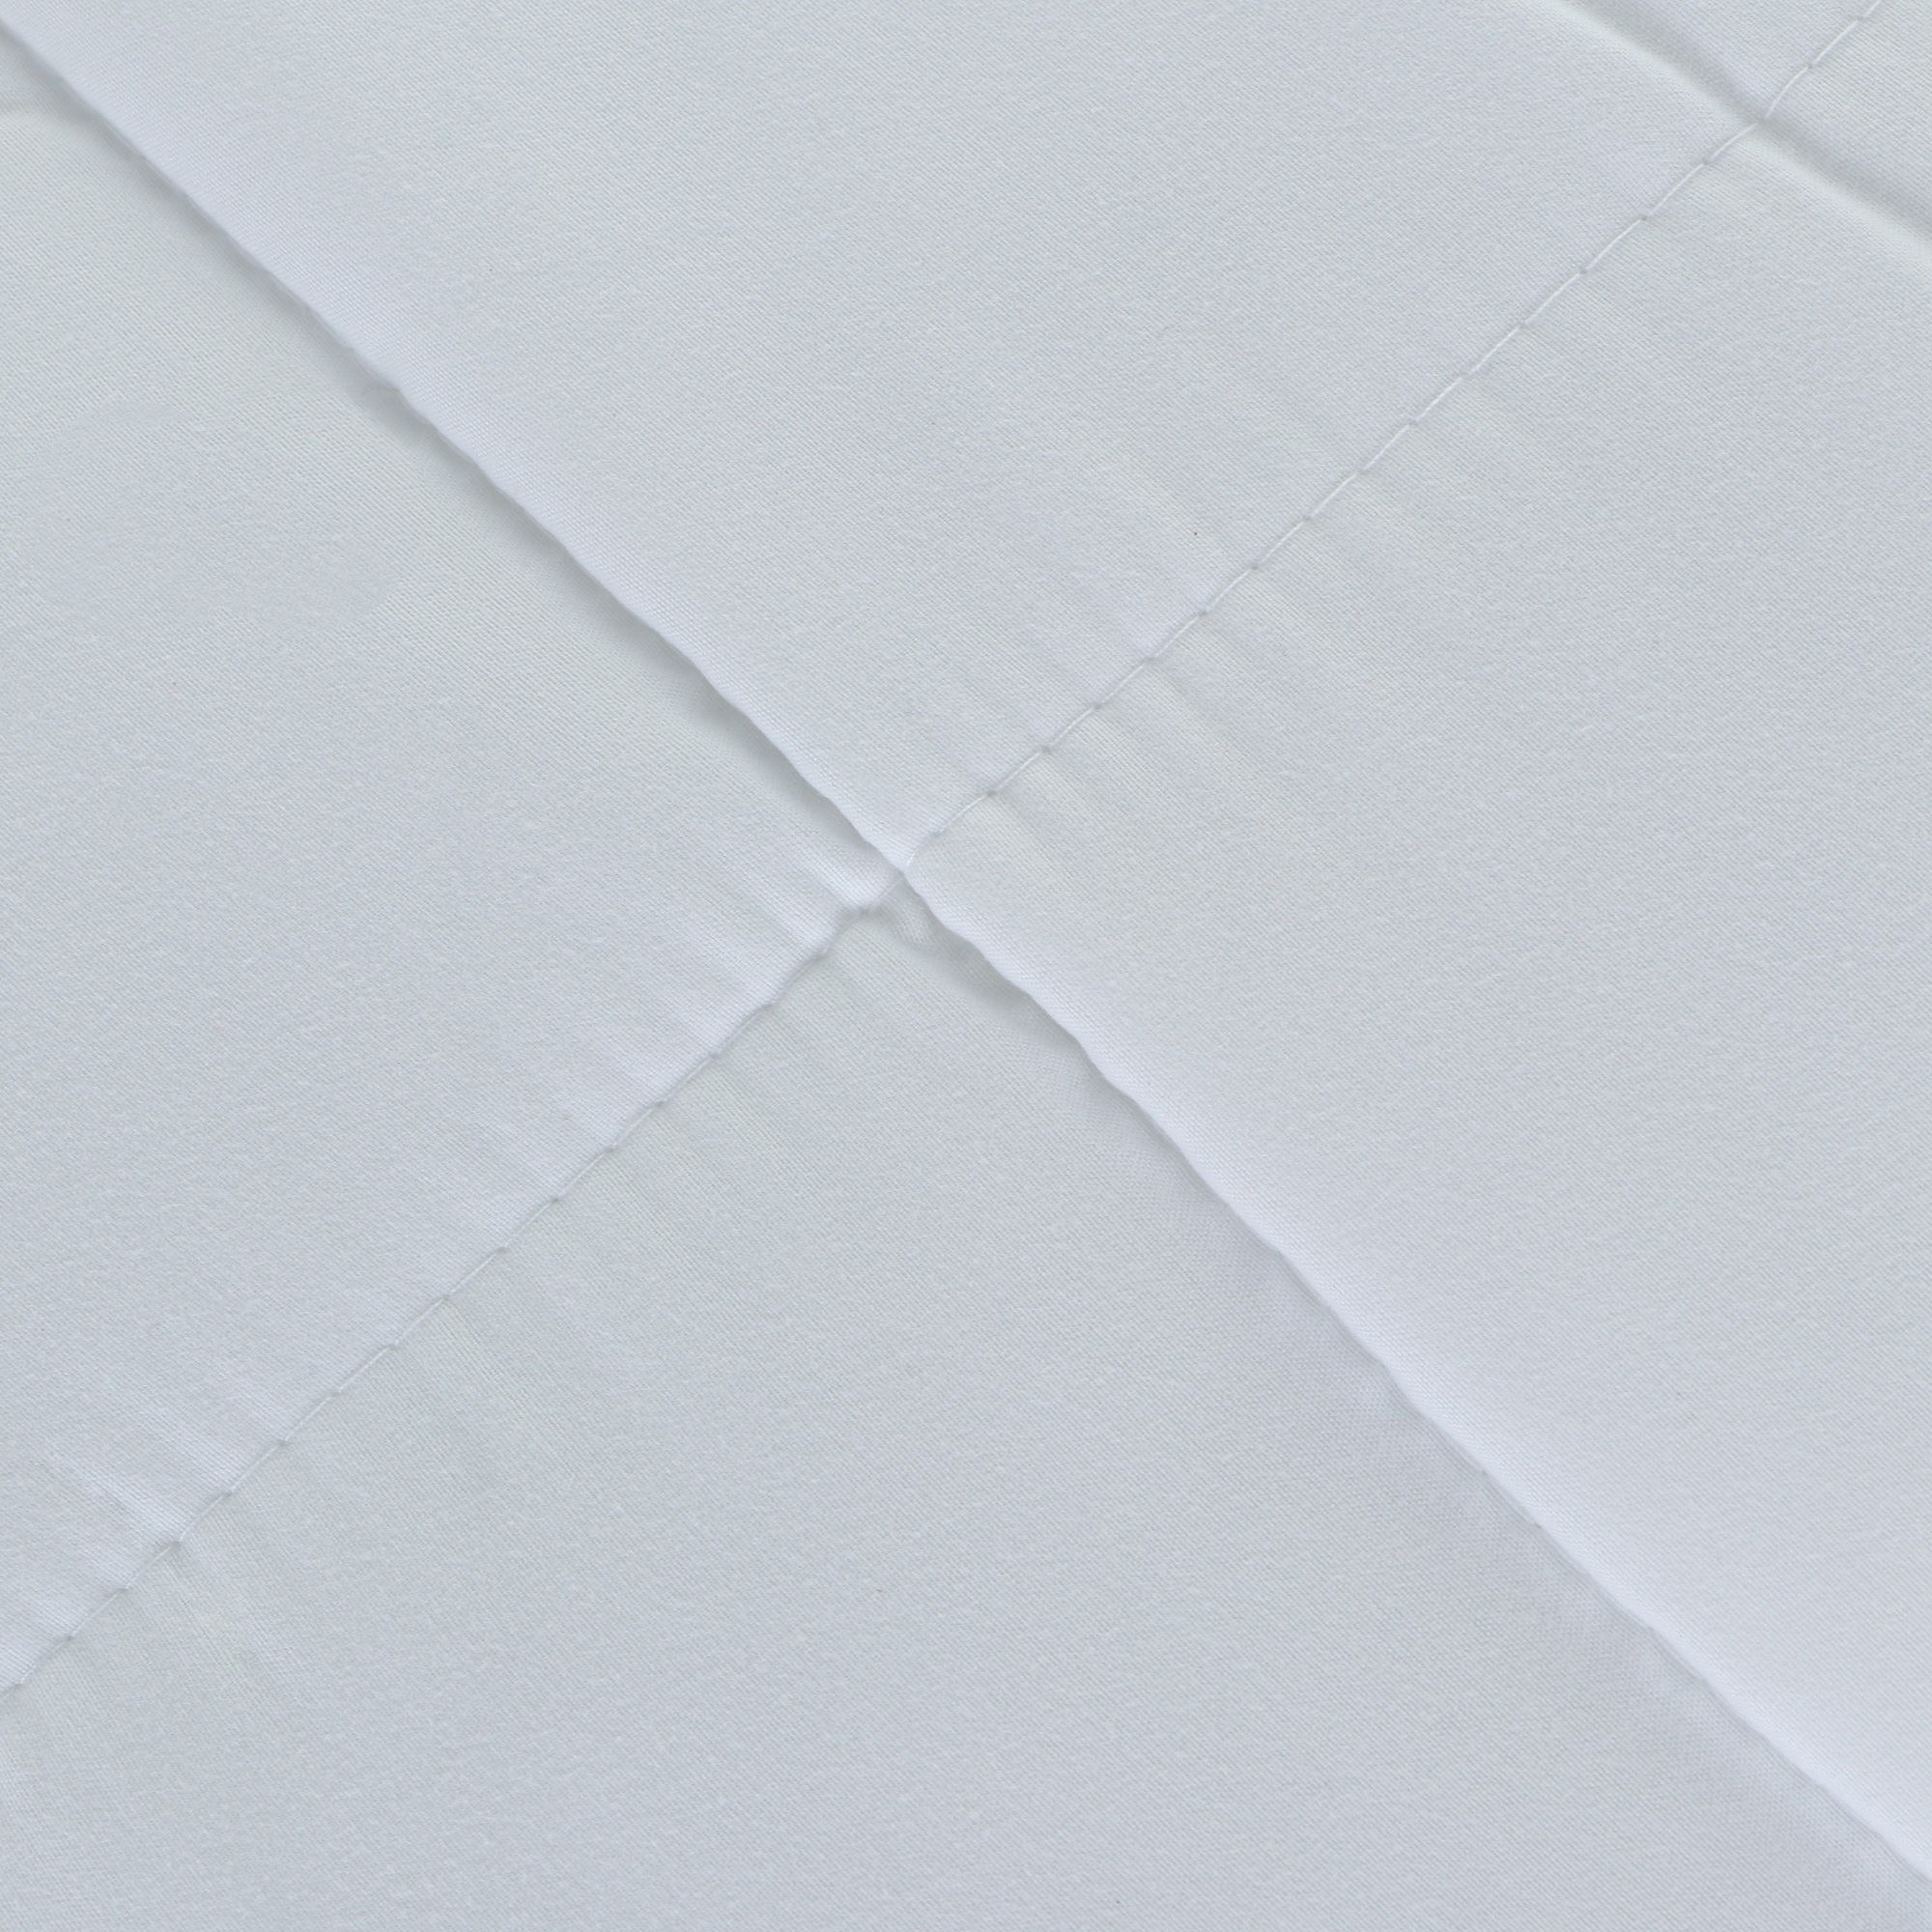 Одеяло Medsleep Swan Princess белое 200х210 см, цвет белый - фото 6